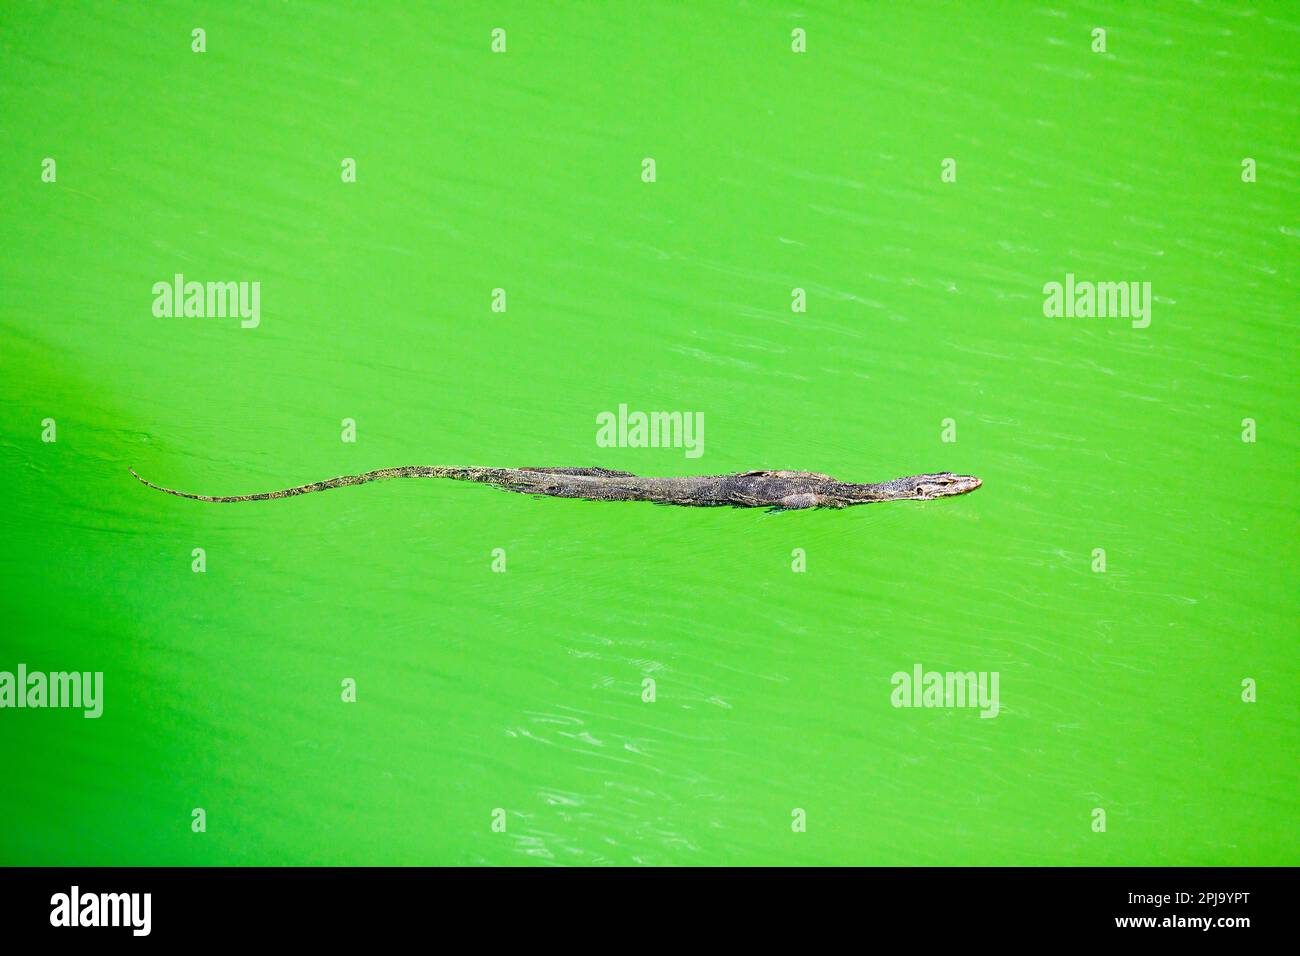 Malayanische Wassereidechse, die im klaren grünen Wasser eines Mangrovenflusses in Singapur schwimmt Stockfoto